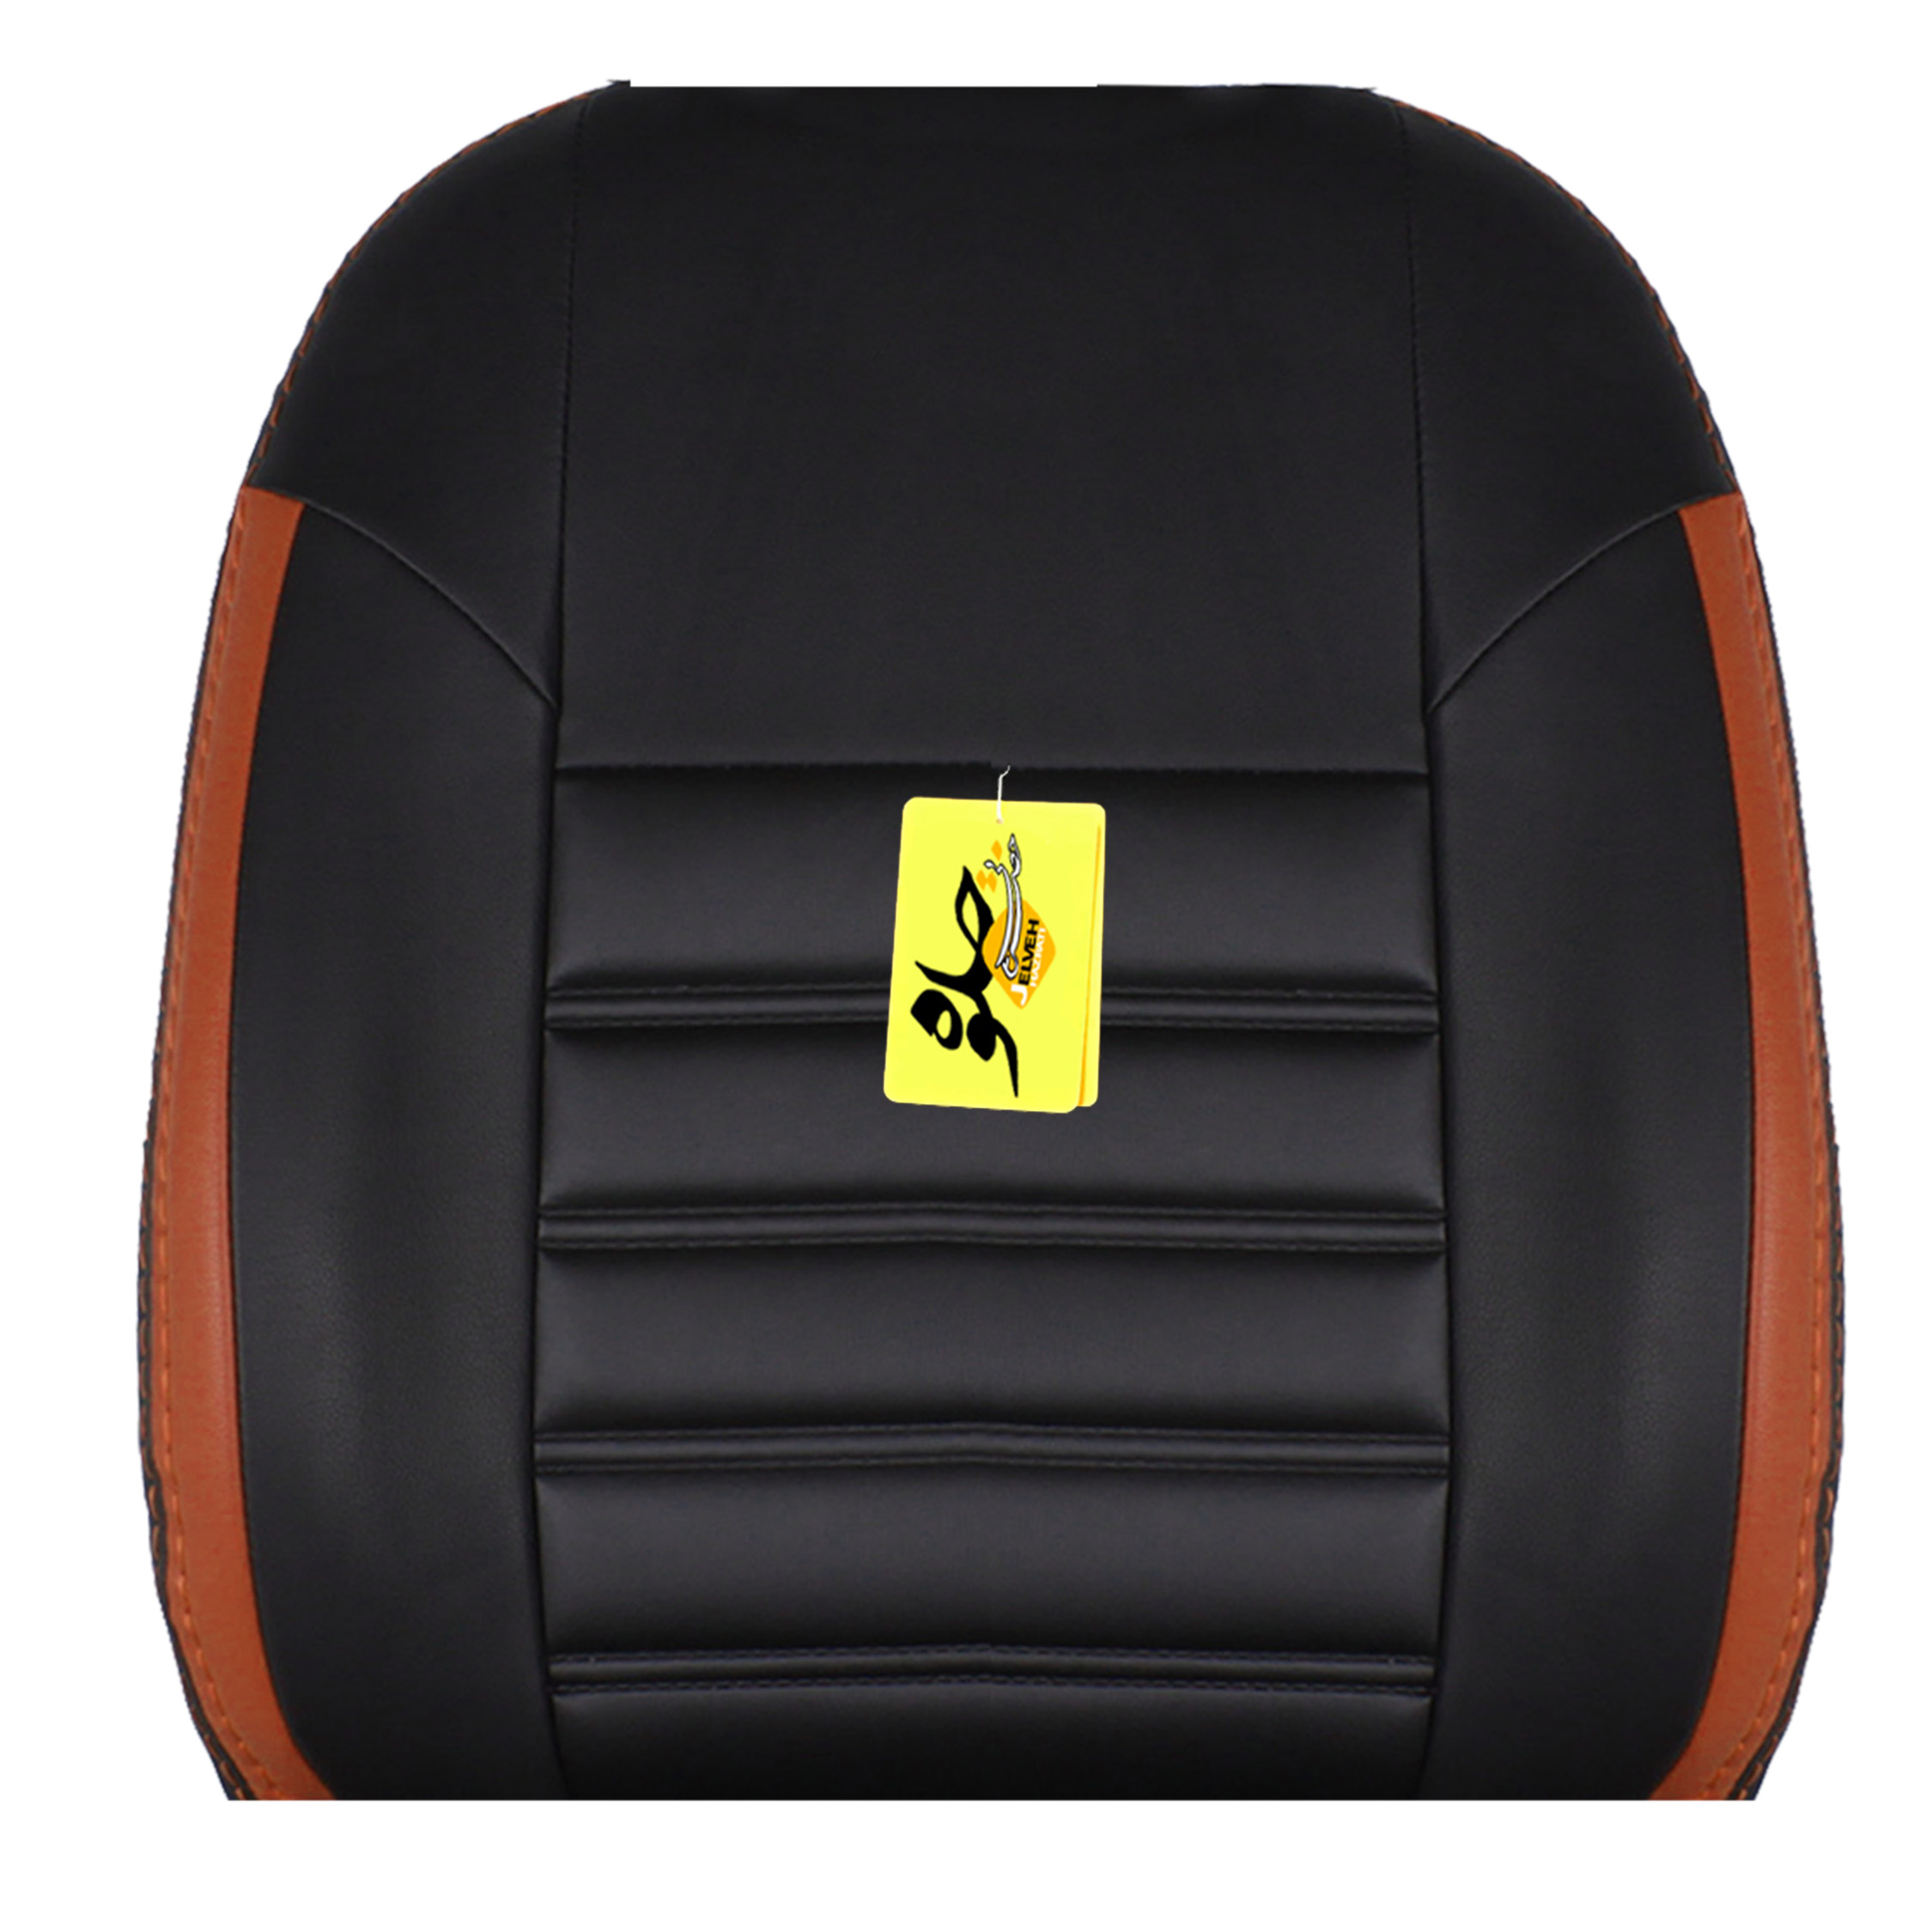 روکش صندلی خودرو جلوه مدل FR14 مناسب برای پژو پارس